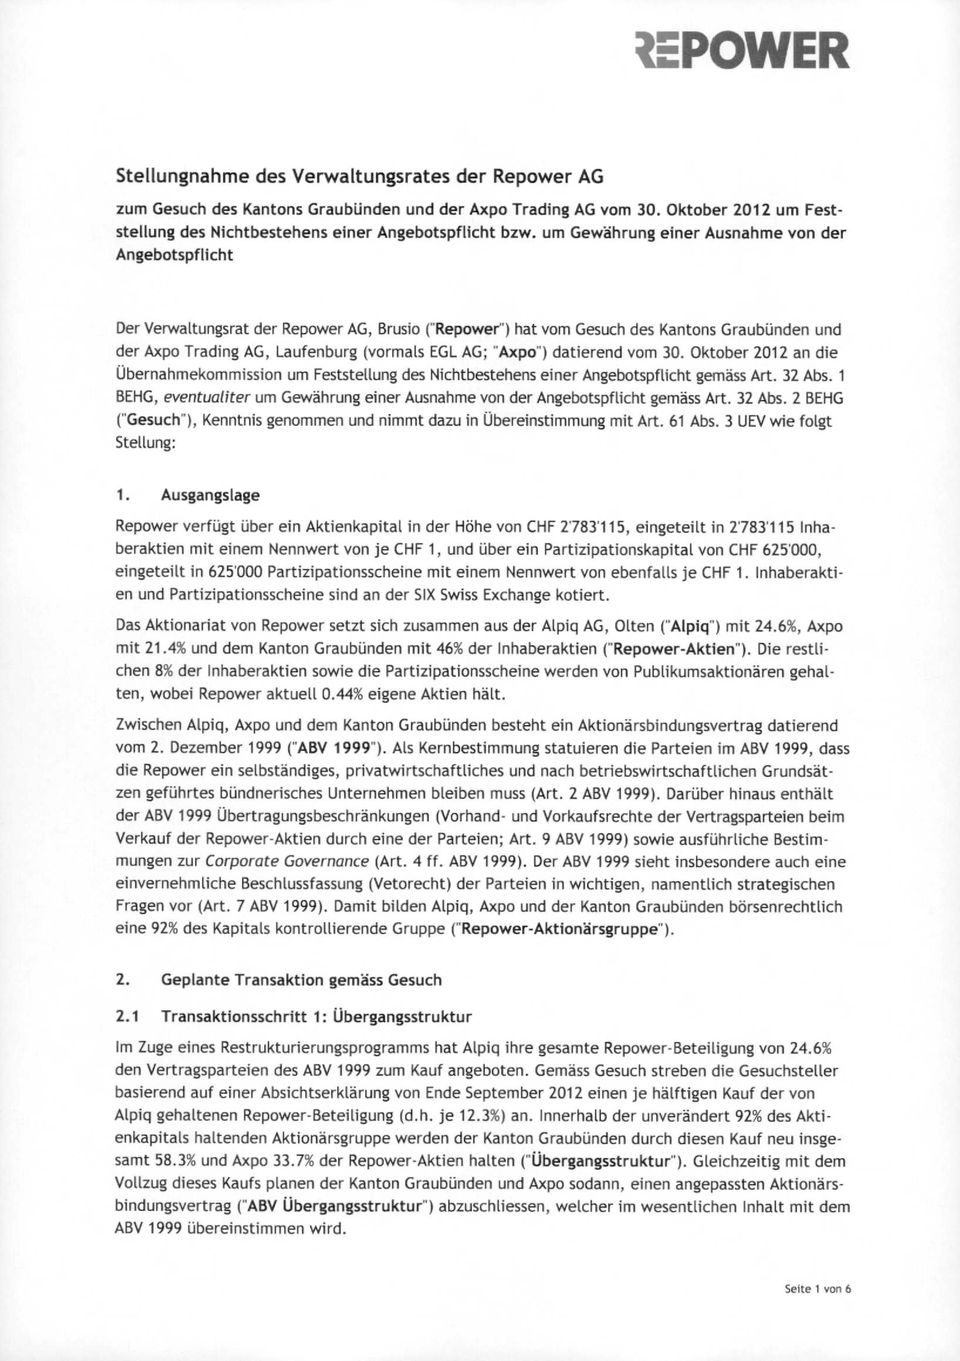 "Axpo") datierend vom 30. Oktober 2012 an die Übernahmekommission um Feststellung des Nichtbestehens einer Angebotspflicht gemäss Art. 32 Abs.